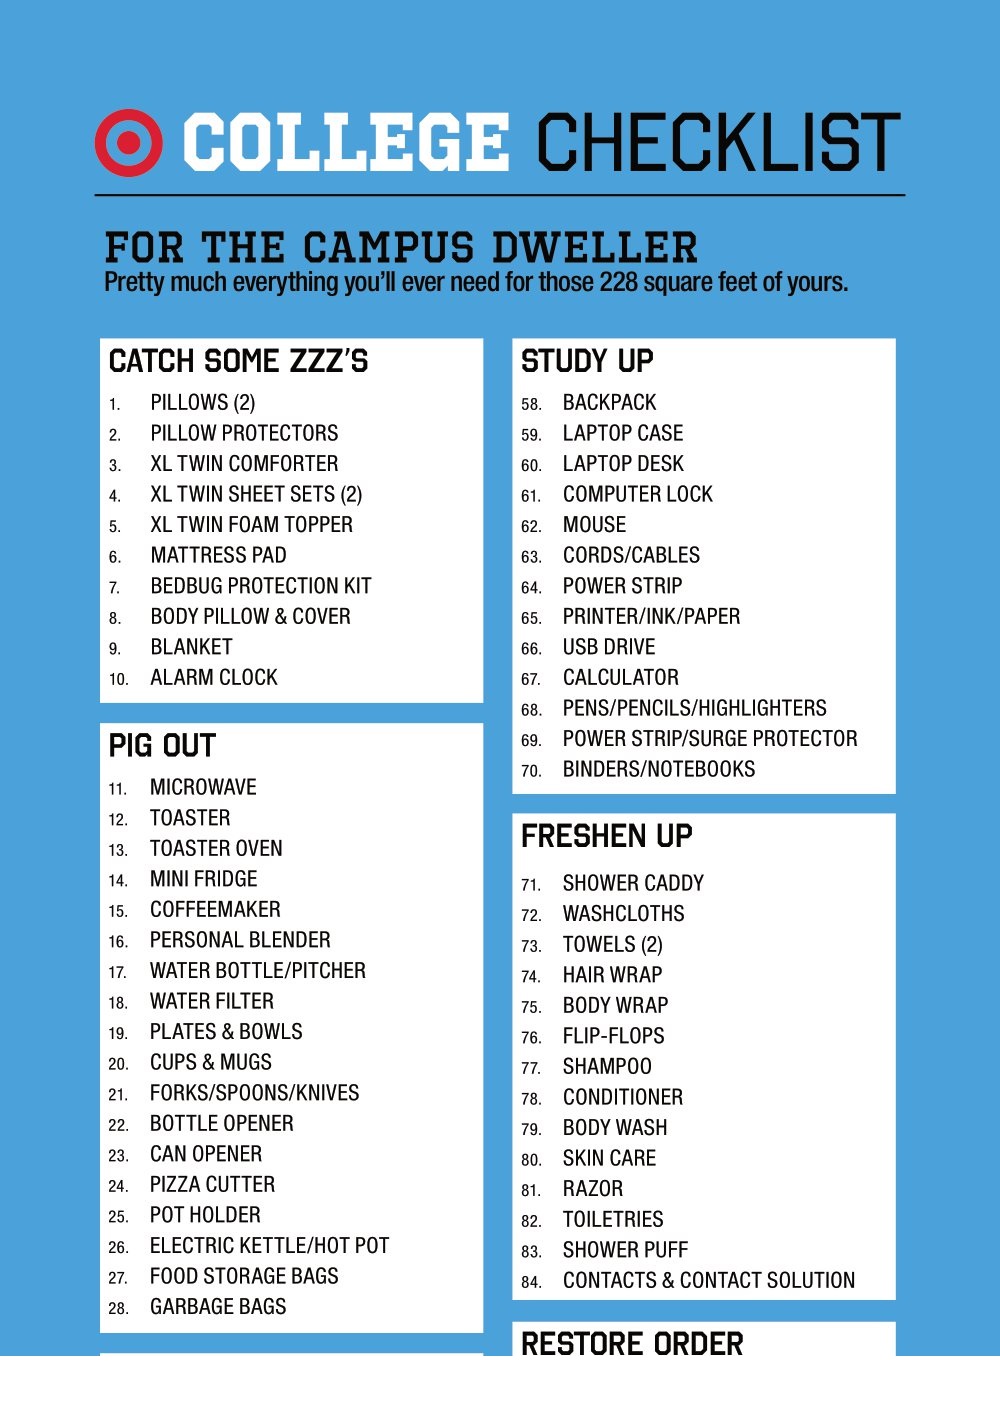 College Checklist Format